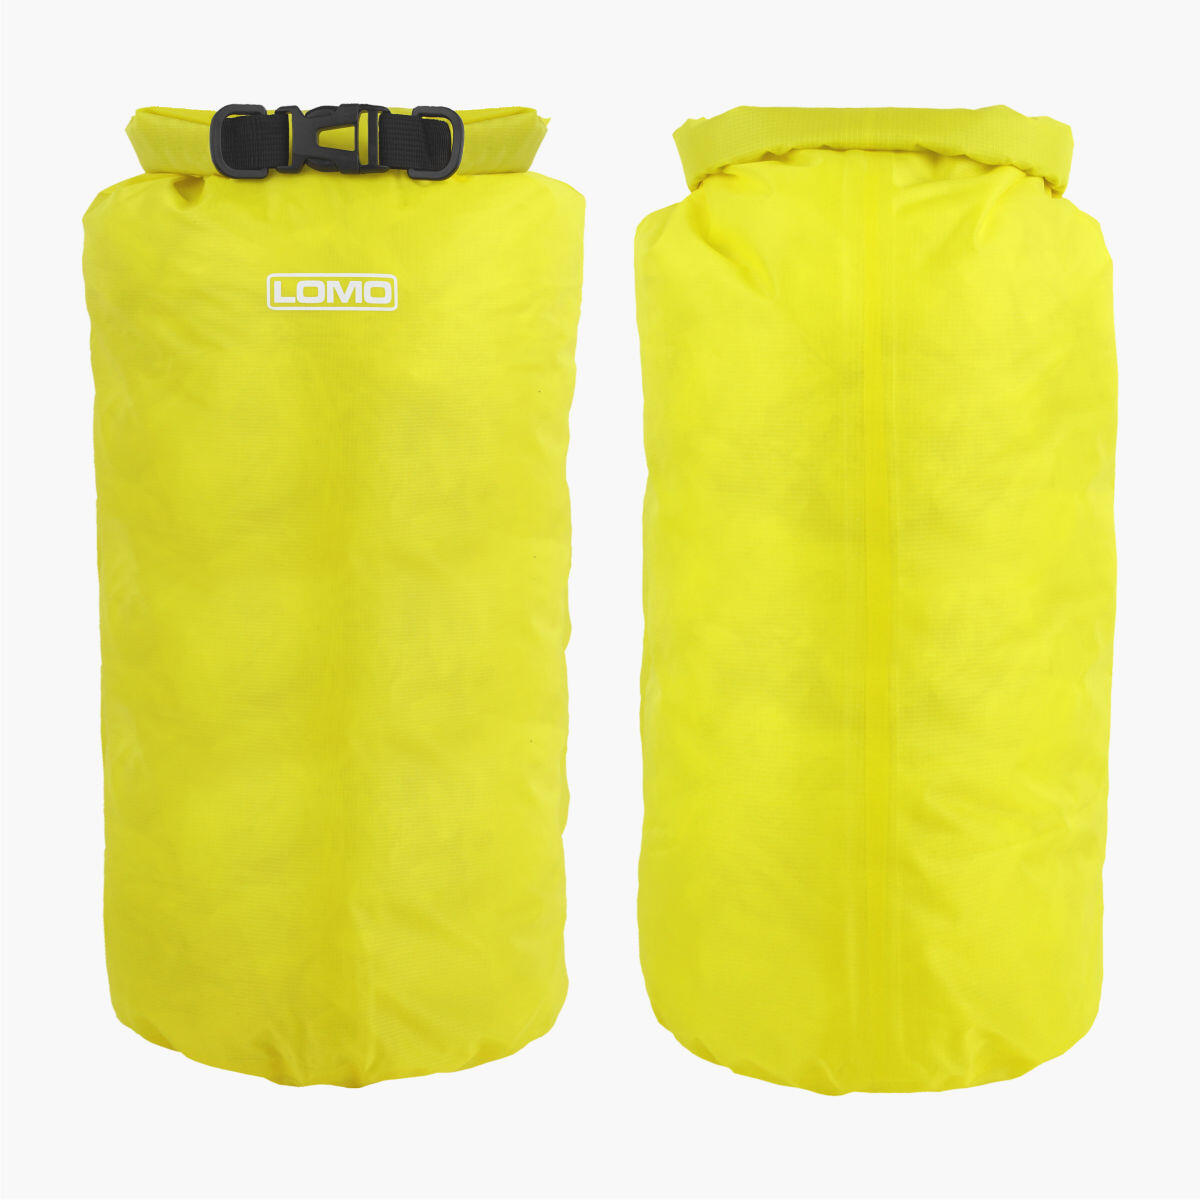 LOMO Lomo 20L TPU Dry Bag - Yellow